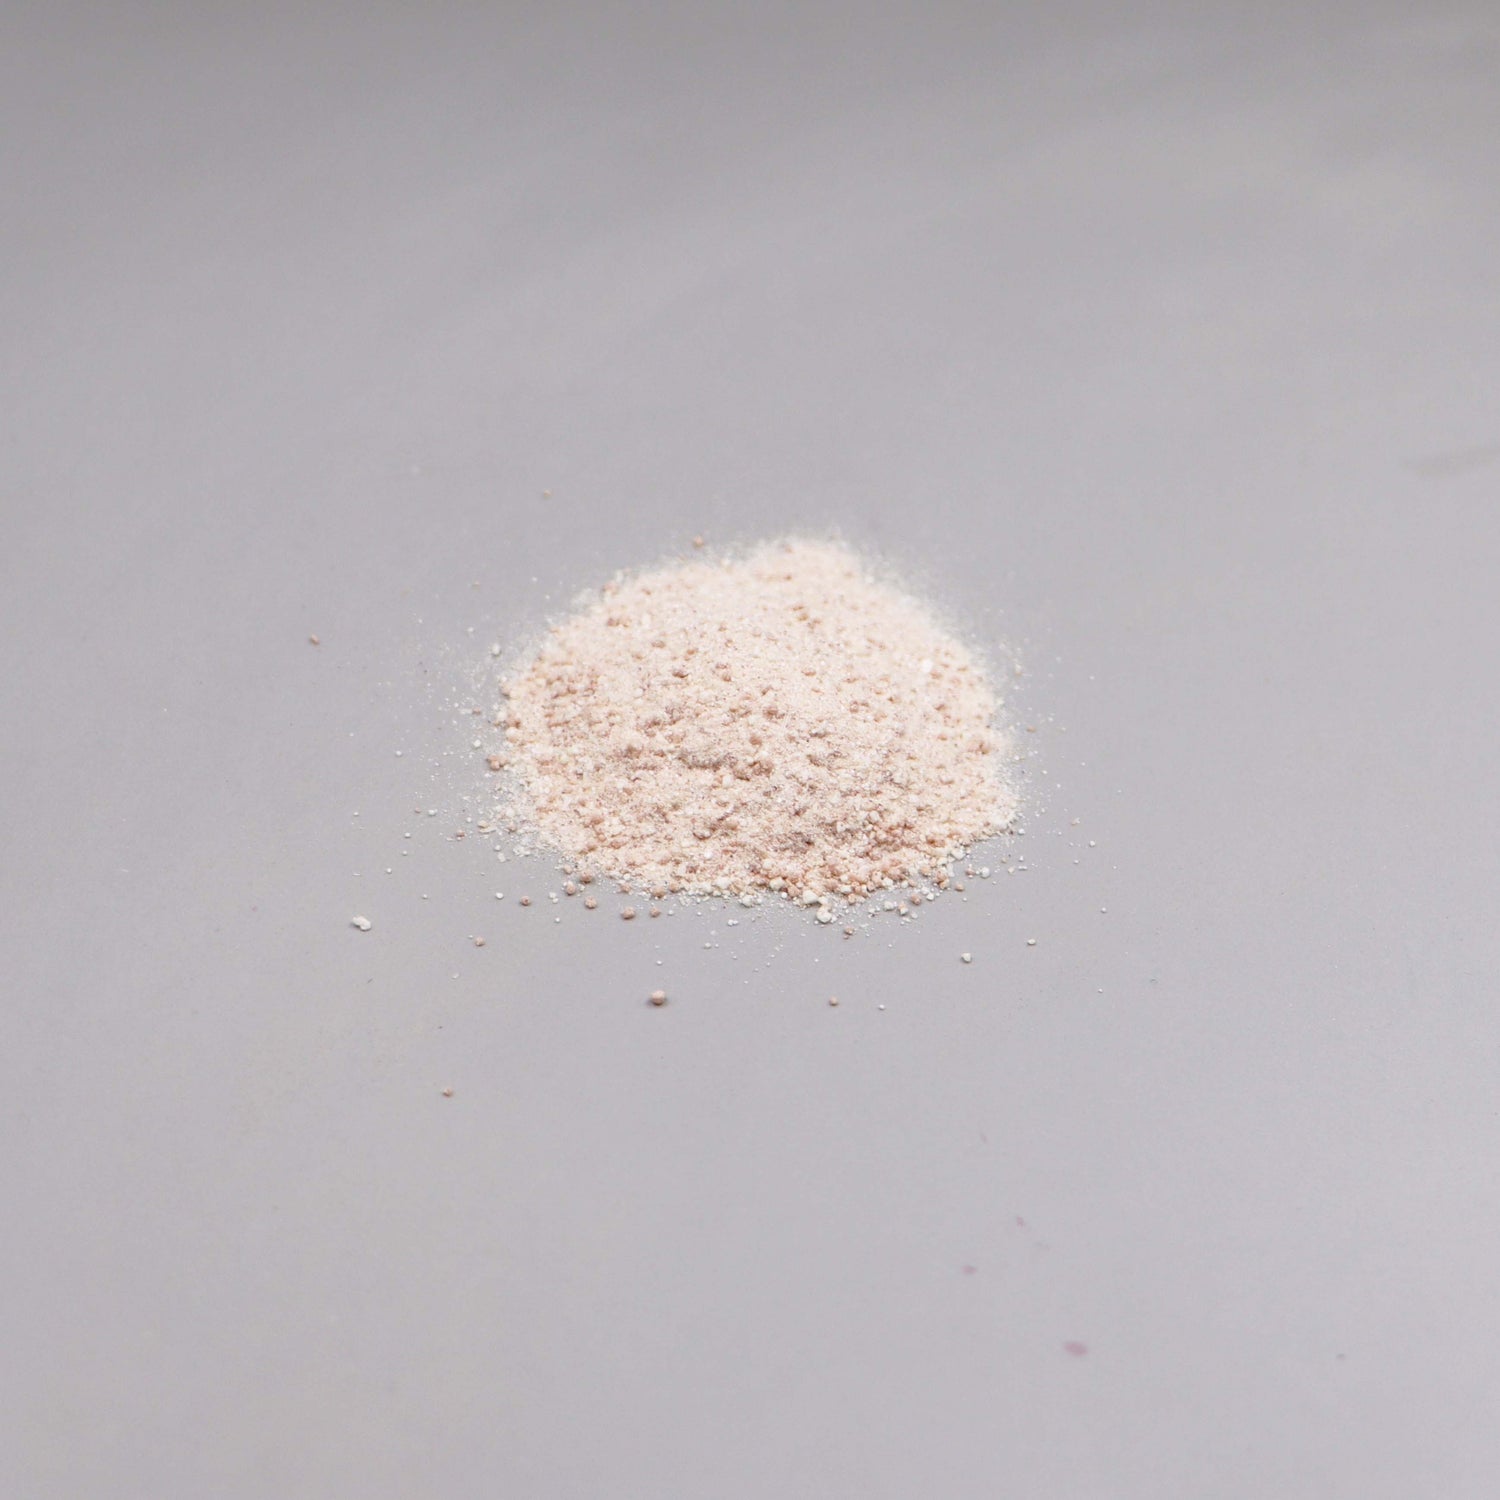 Pale white powder